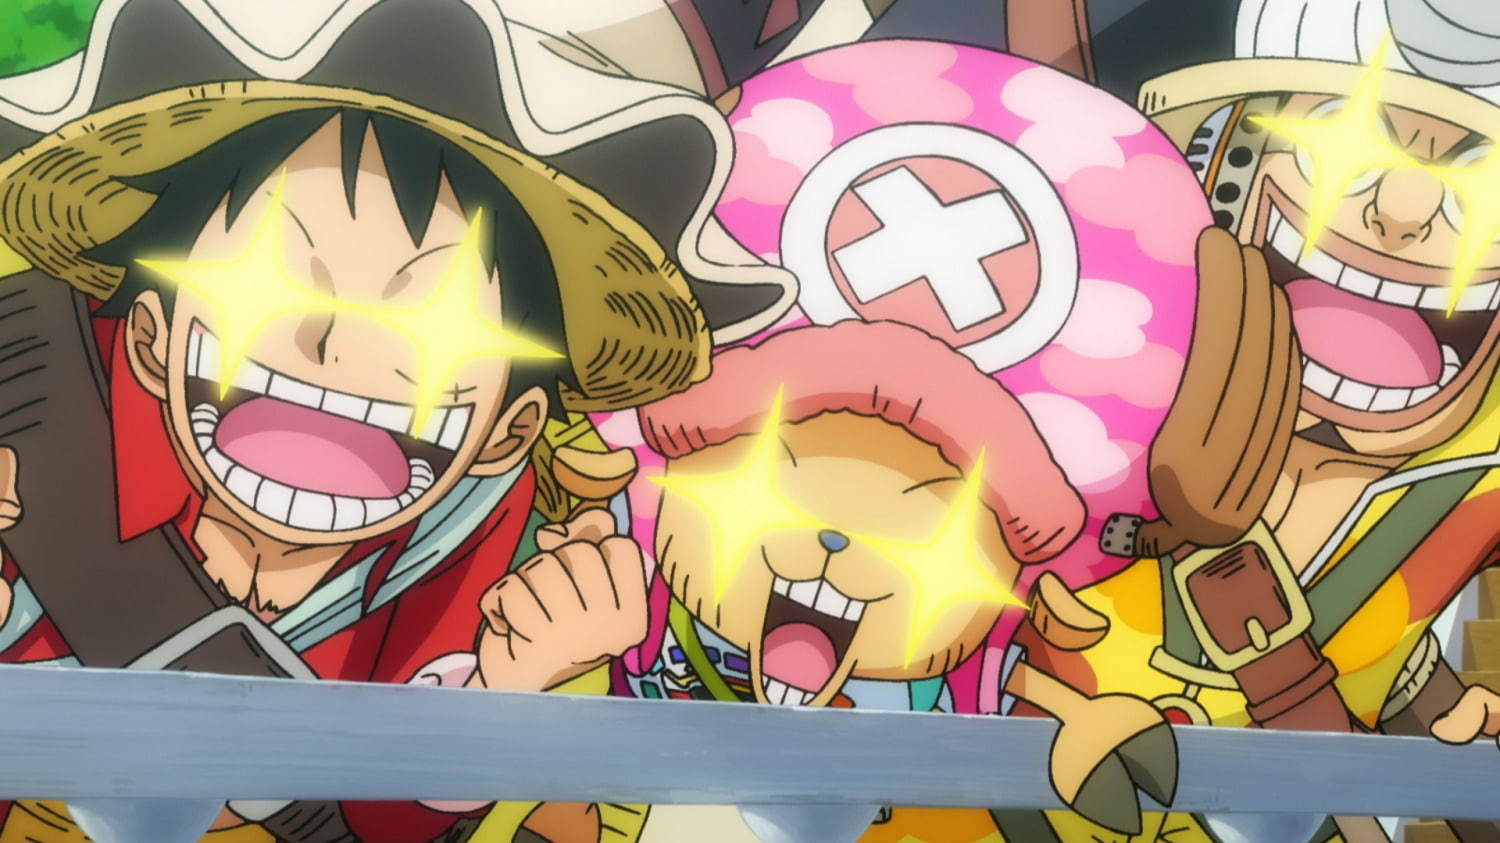 劇場版 One Piece Stampede スタンピード 歴代最大キャラ数で海賊王の宝探し ファッションプレス